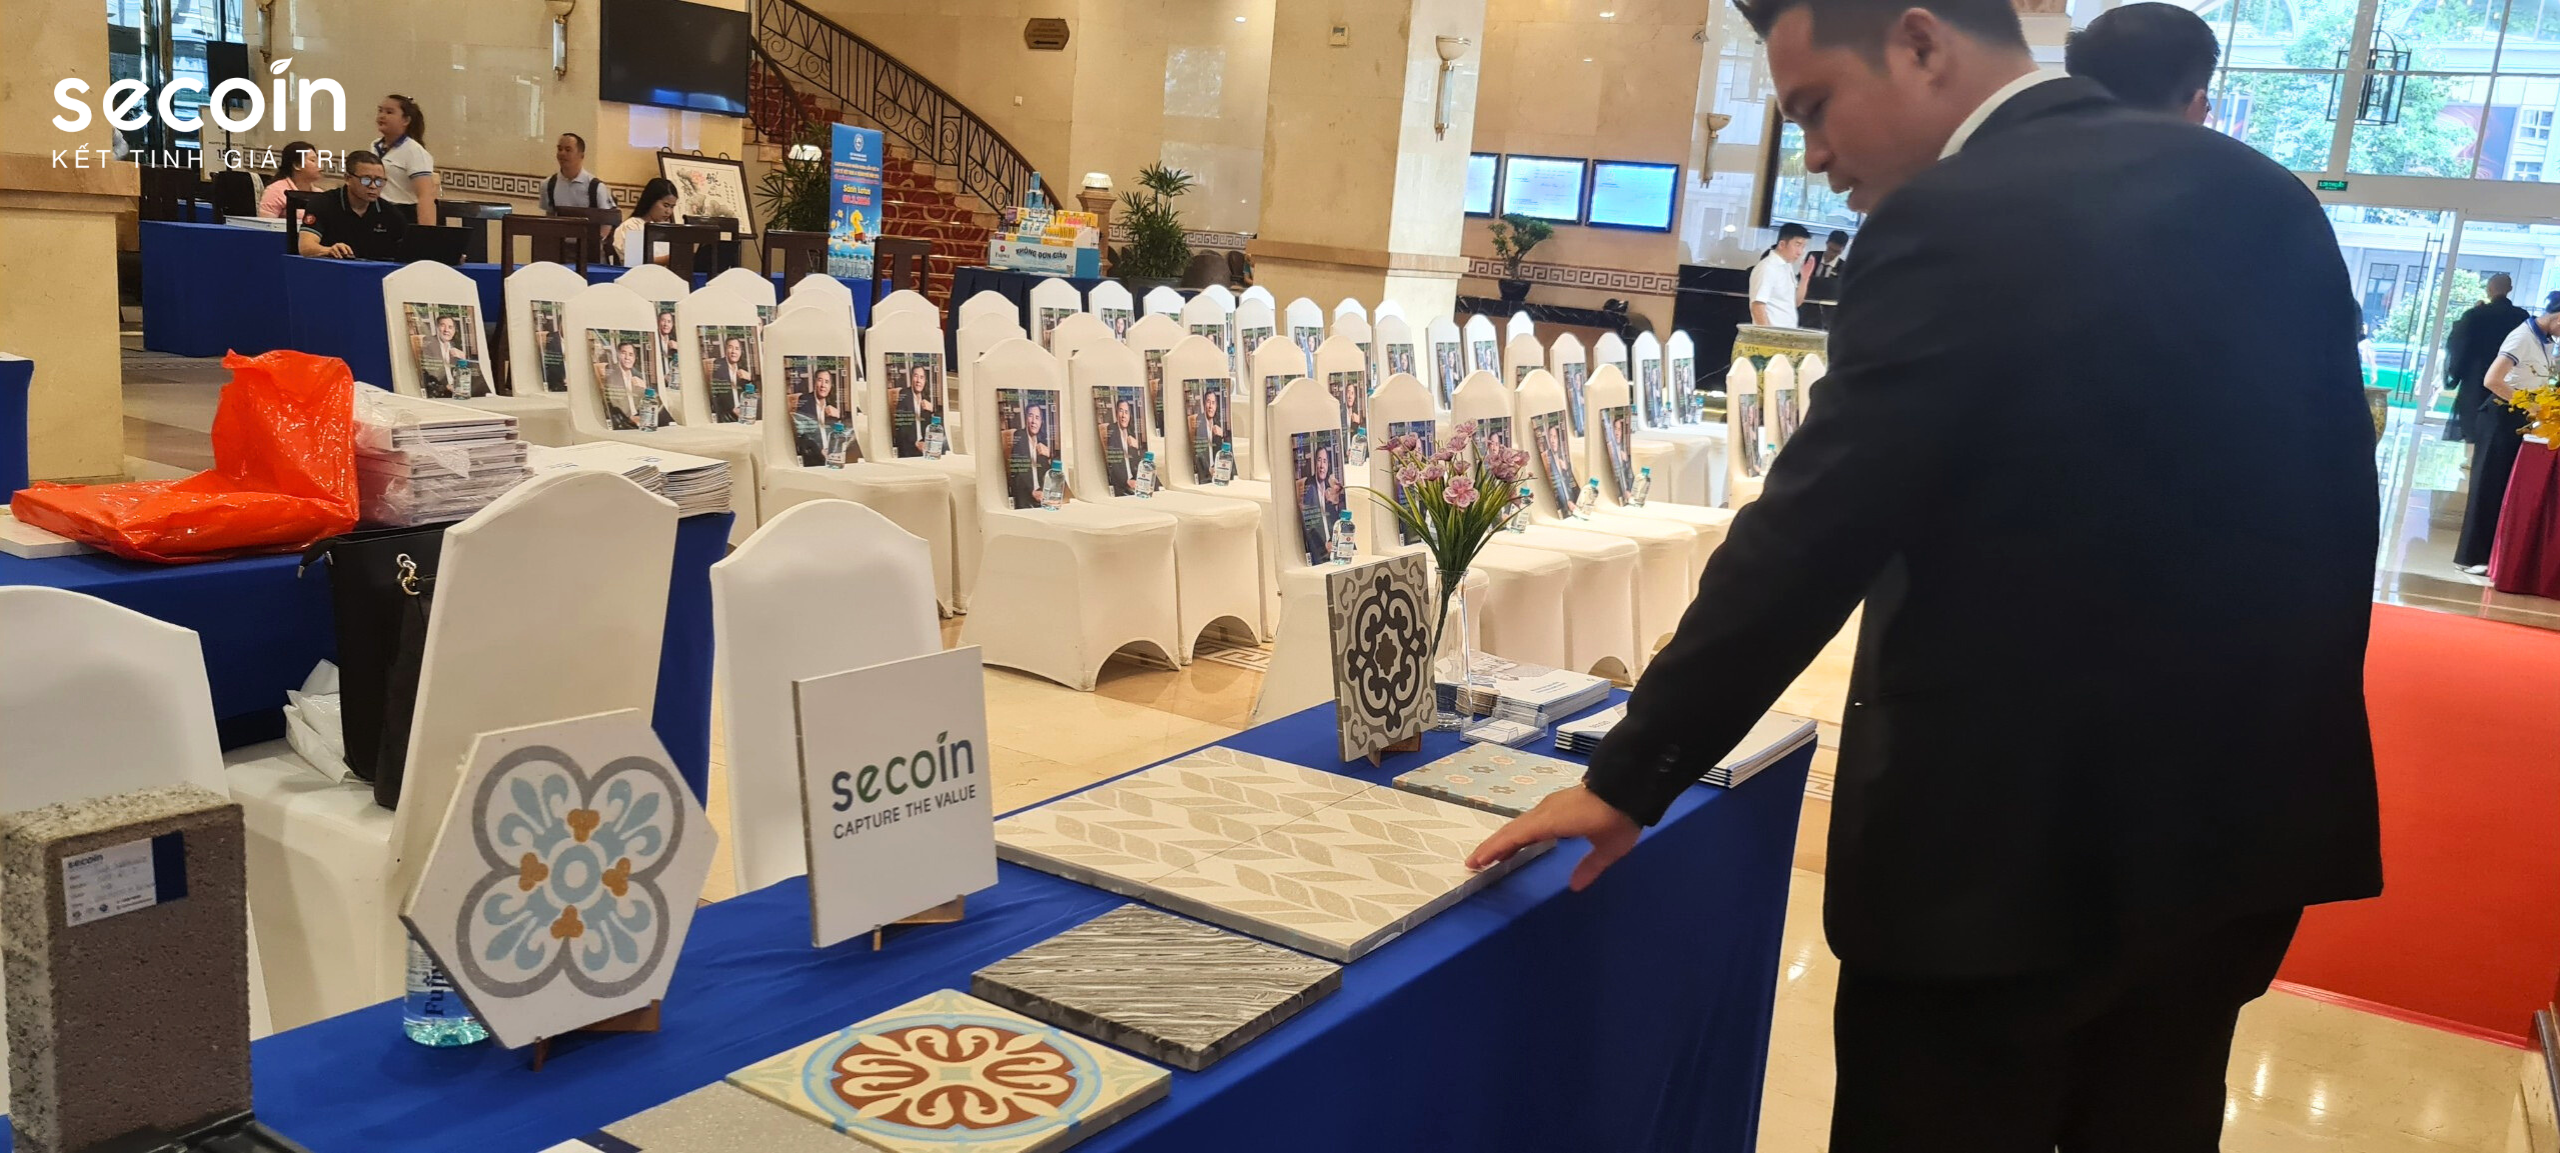 Secoin tham dự chương trình Kết nối cùng doanh nghiệp xây dựng B2B